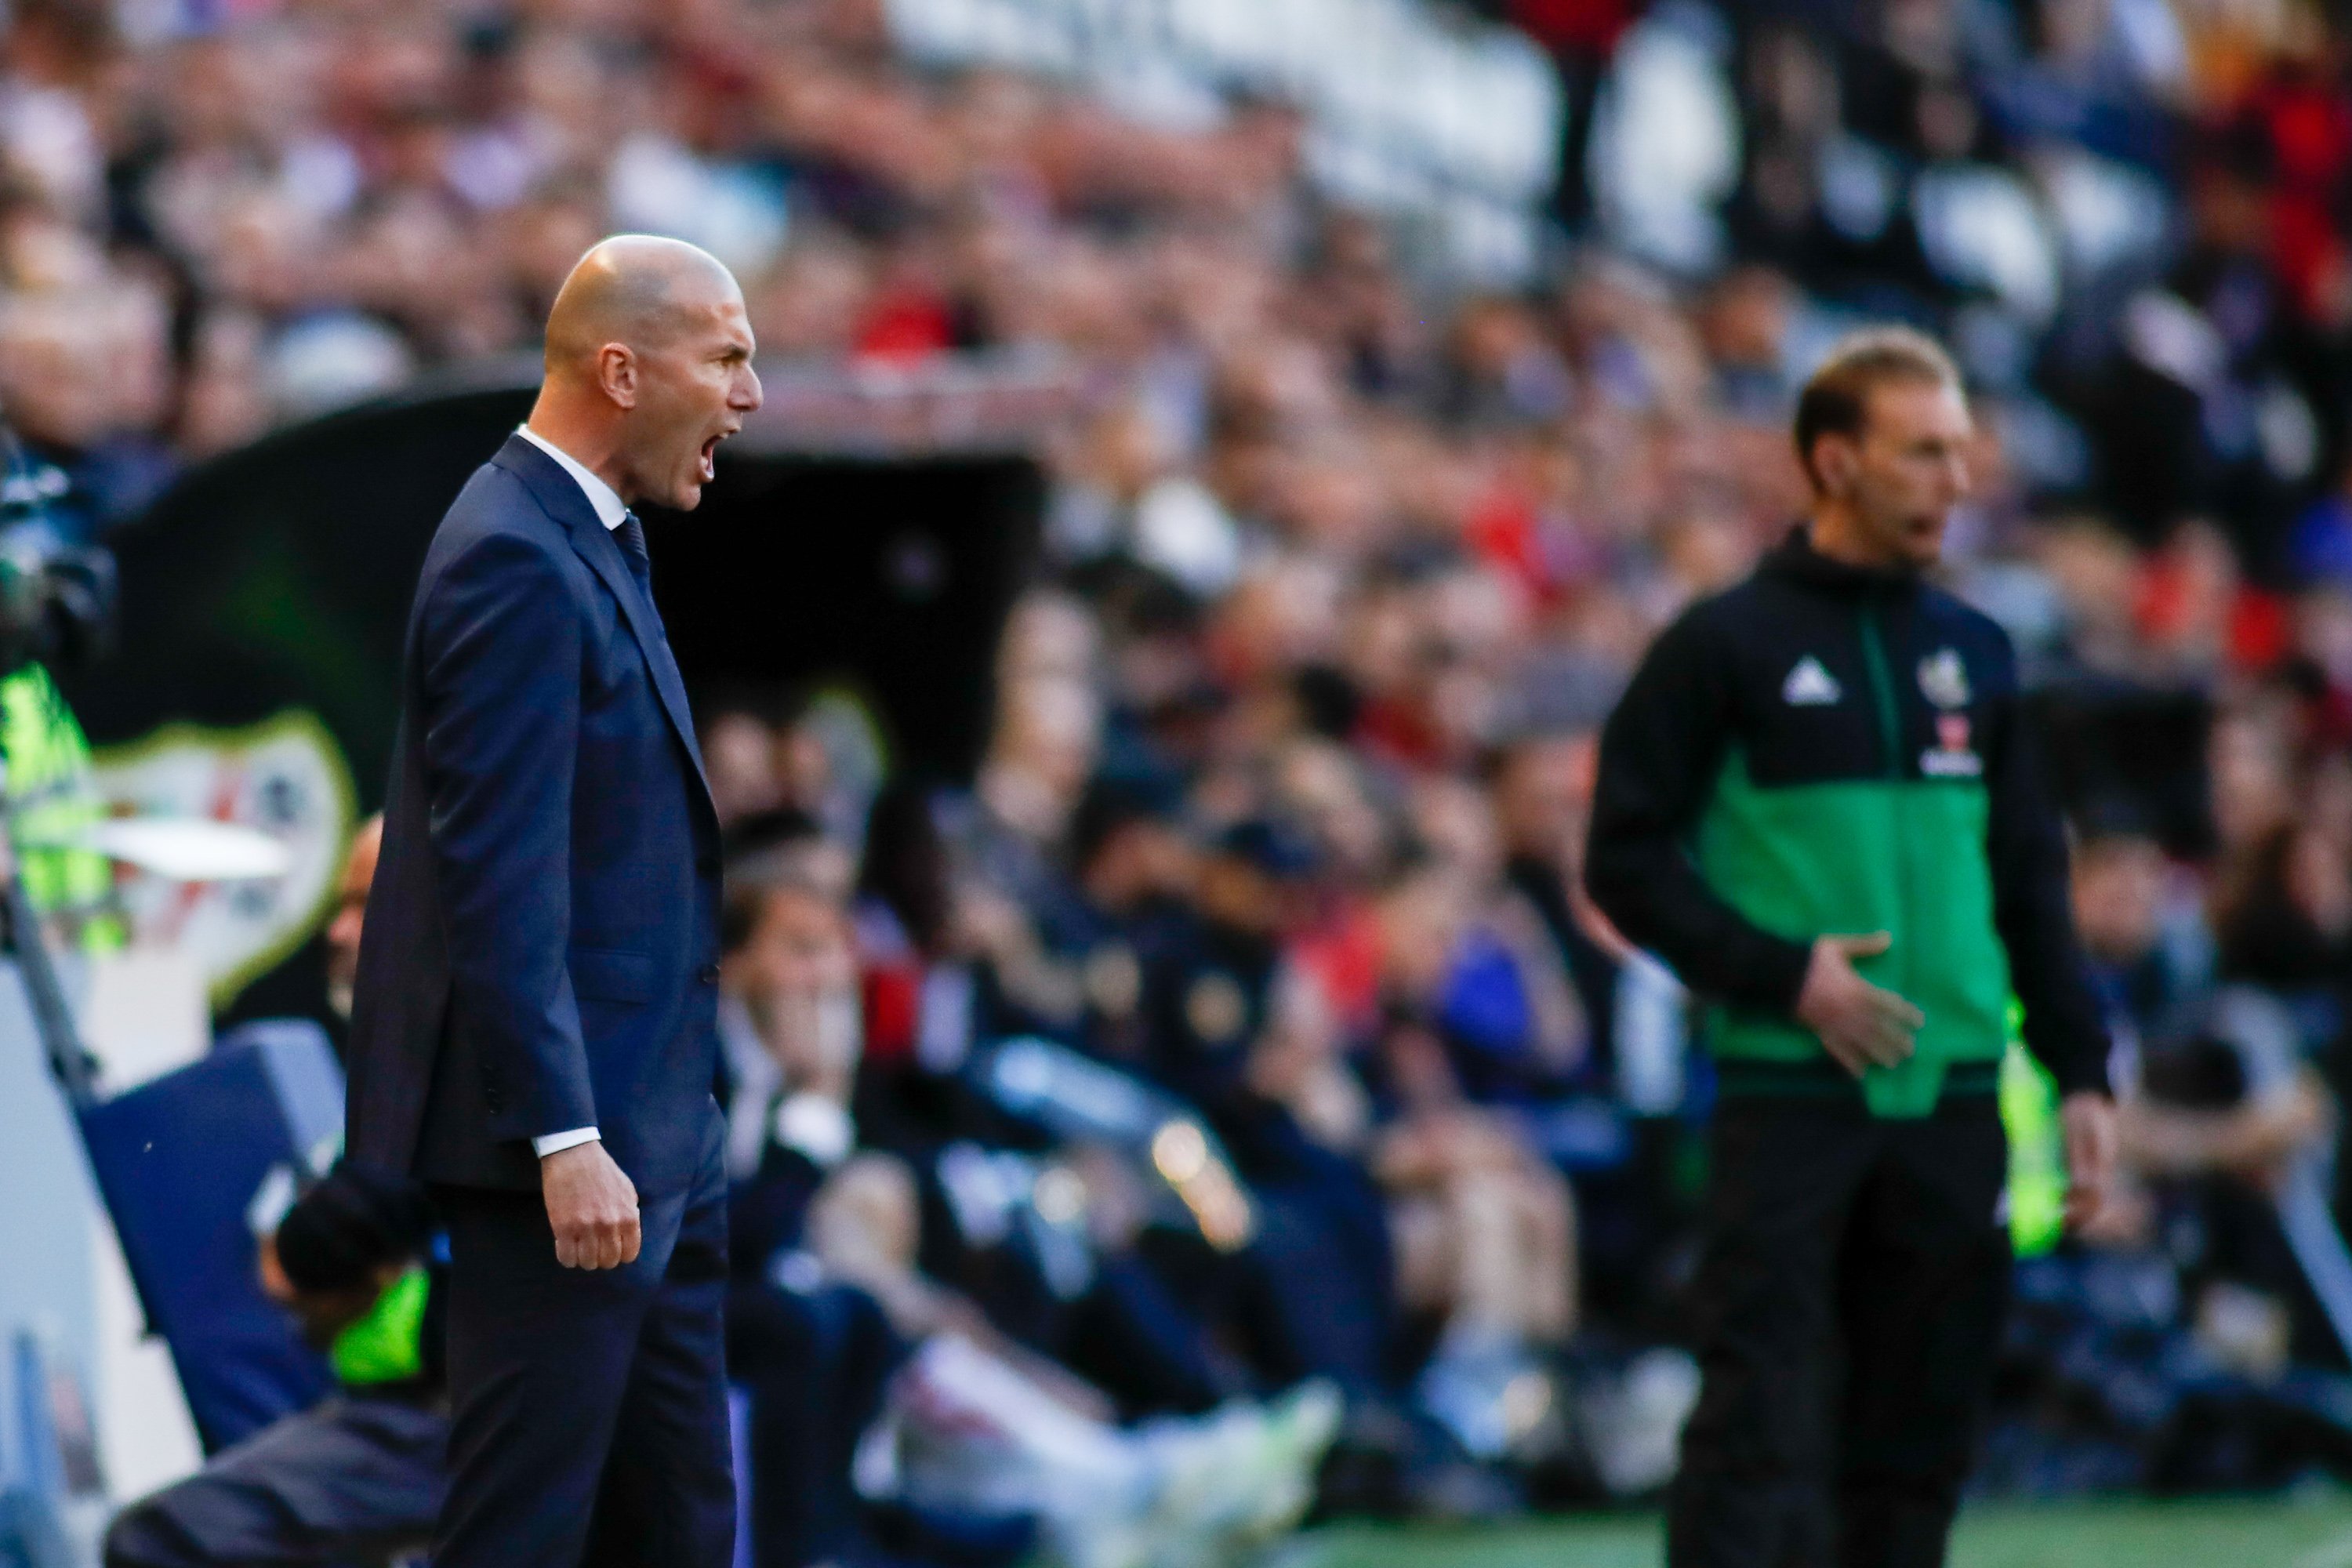 Zidane rebutja Al-Khelaïfi i el nou elegit del PSG no vol Sergio Ramos